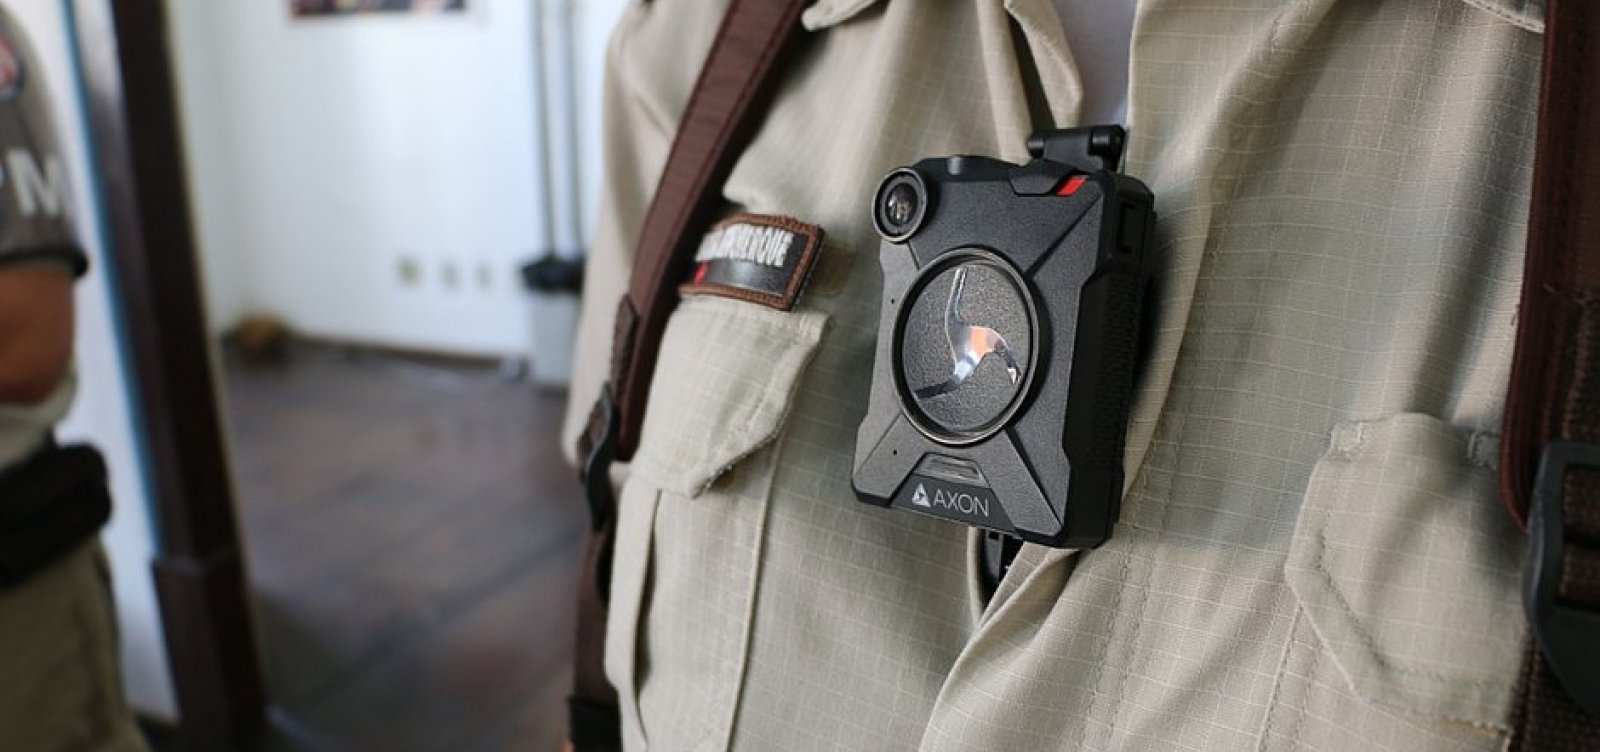 Defensoria orienta aplicação de câmeras em batalhões com alto índice de letalidade